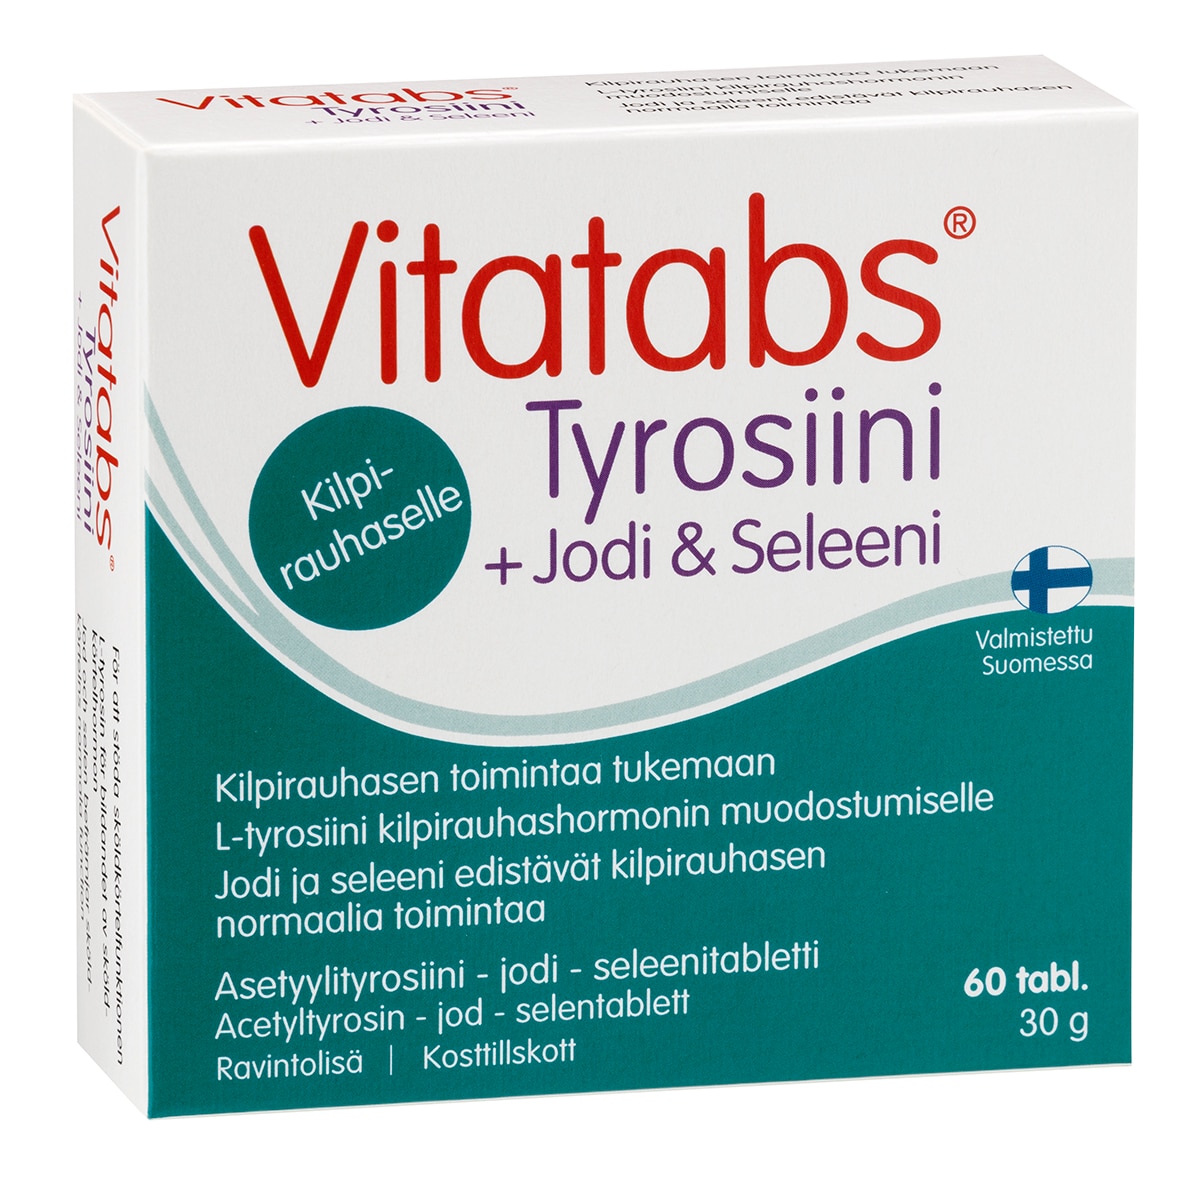 Vitatabs® Tyrosiini + Jodi & Seleeni